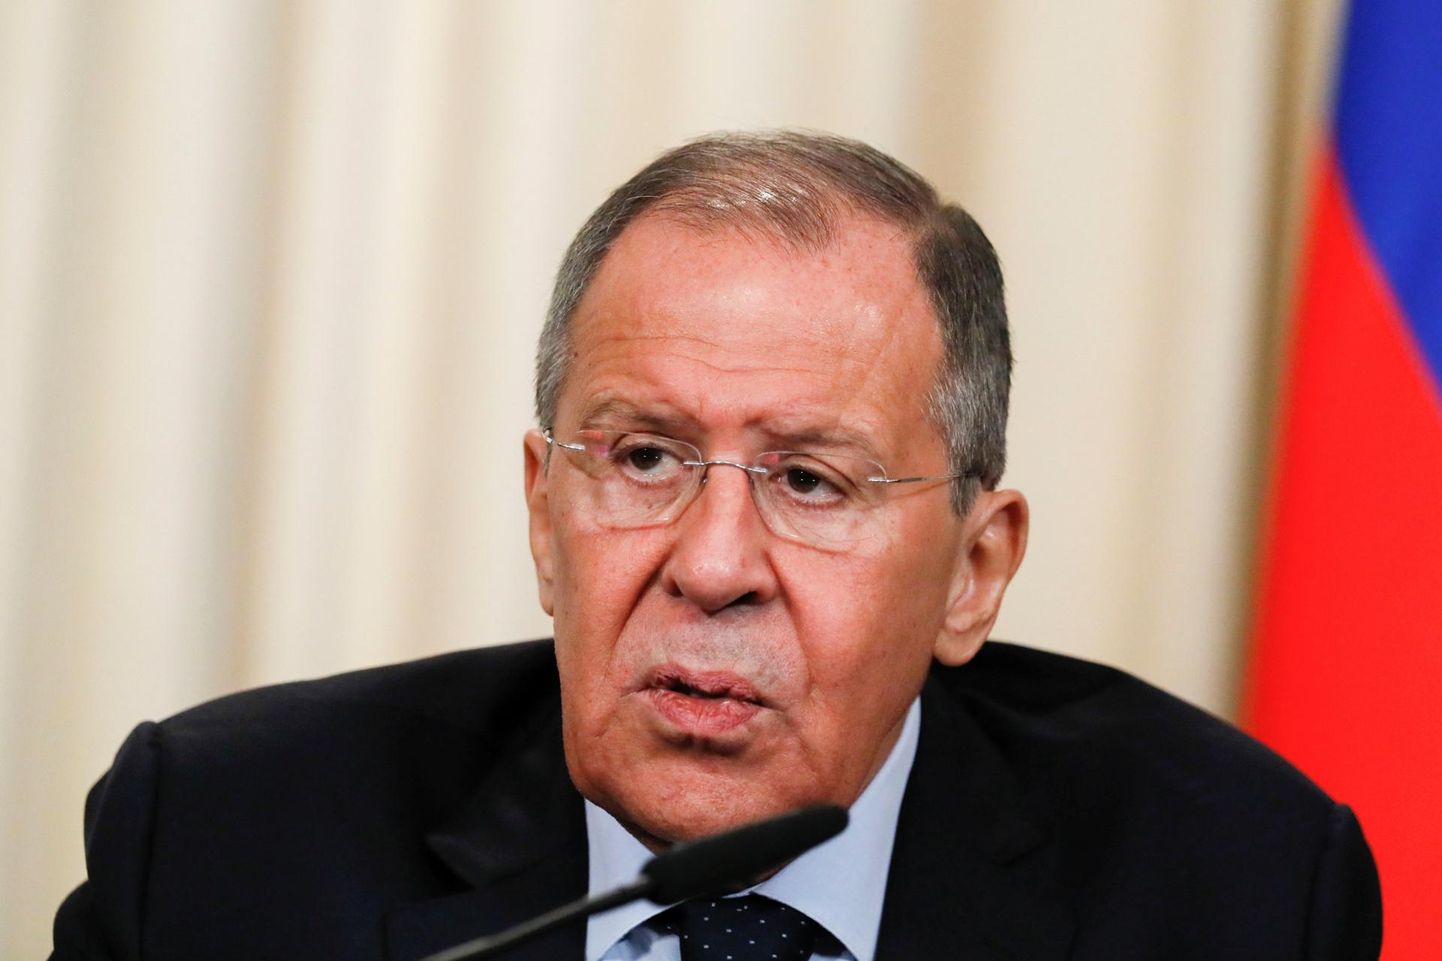 Vene välisminister Sergei Lavrov lubas, et kui Venemaa hääleõigus Euroopa Nõukogu Parlamentaarses Assamblees taastatakse, siis õiendab Moskva ka oma liikmemaksuvõla.